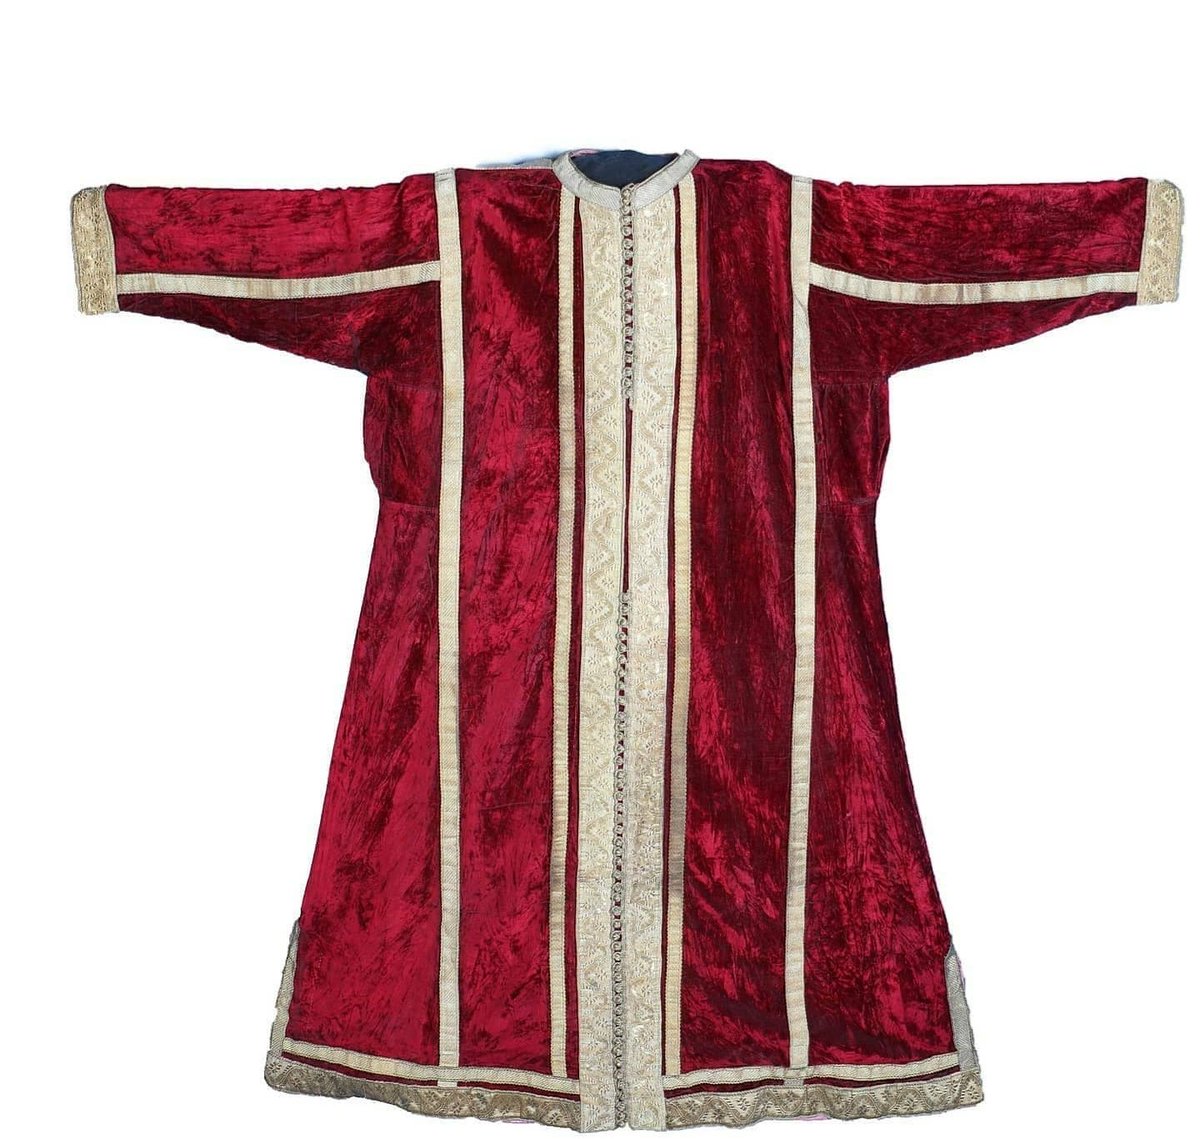 Le caftan de RabatCaftan de velours grenat brodé et garni de galons au fil d'or.Porté souvent sans ceinture, ce caftan est accompagné de la fameuse Touqida (coiffe en forme conique).